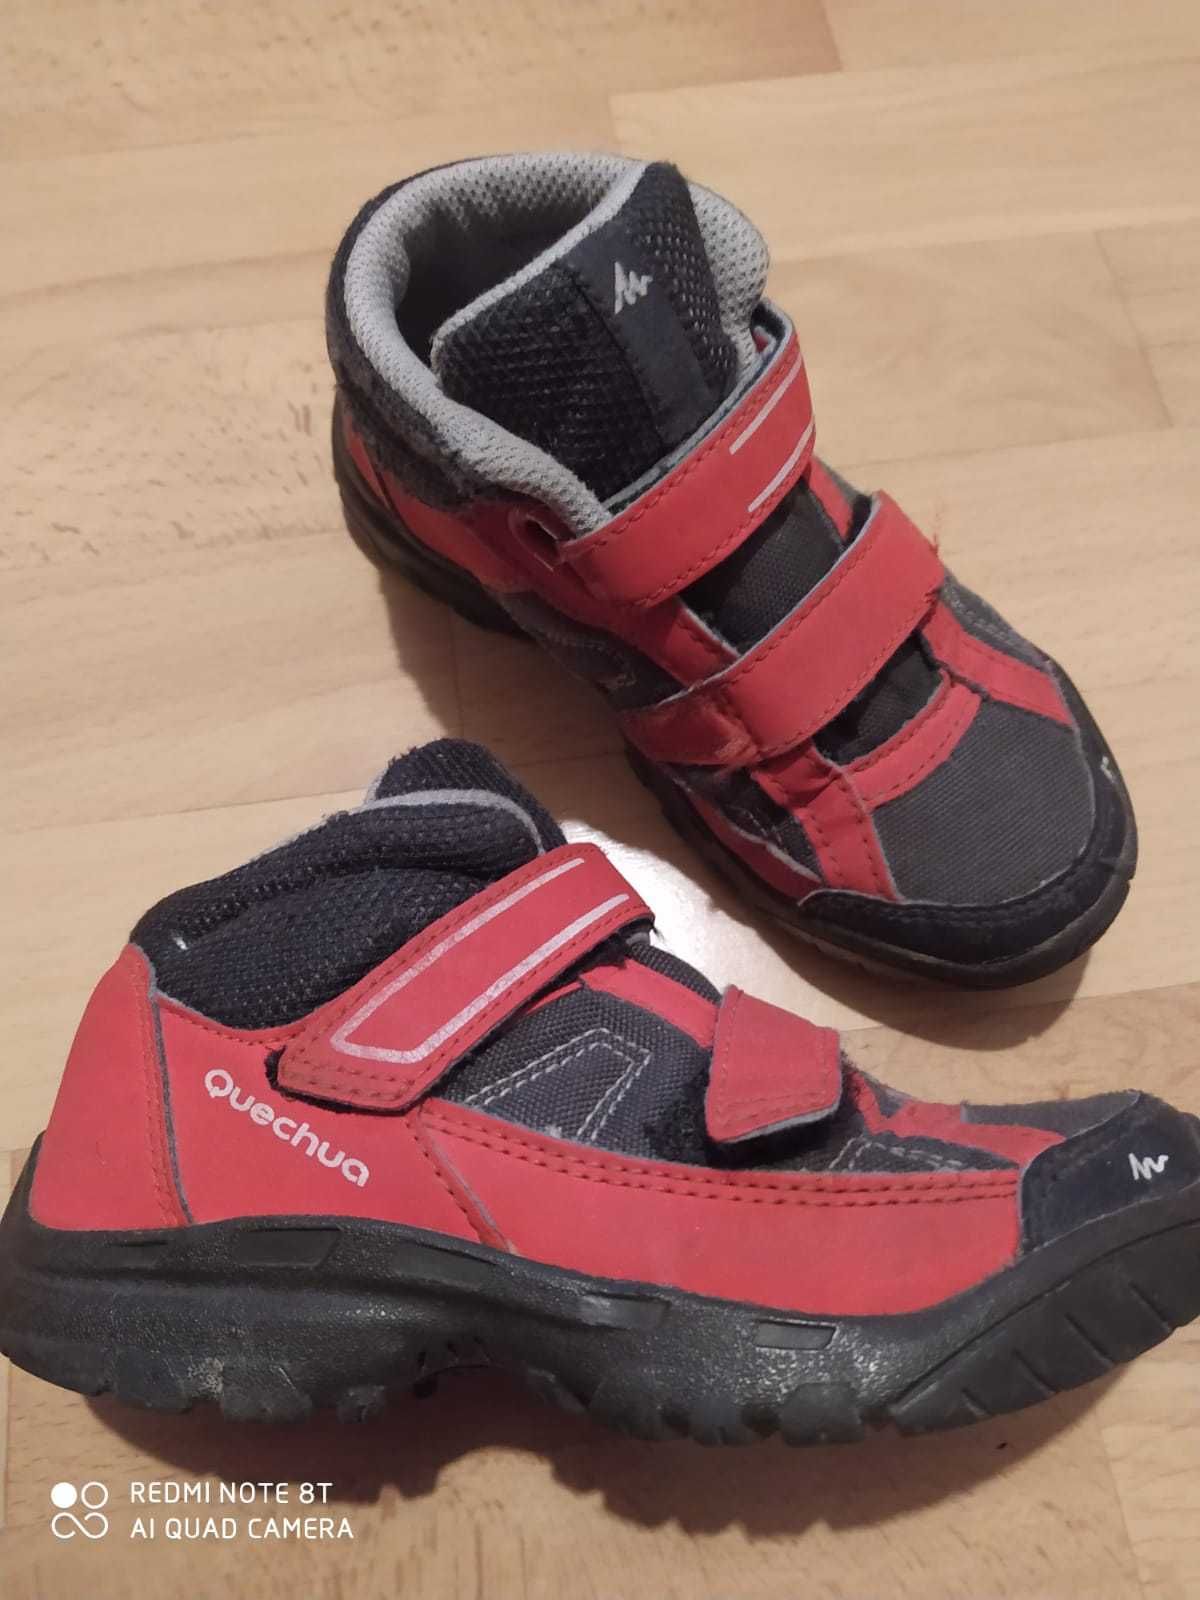 Buty dla dzieci firmy Quechua rozmiar 28cm.